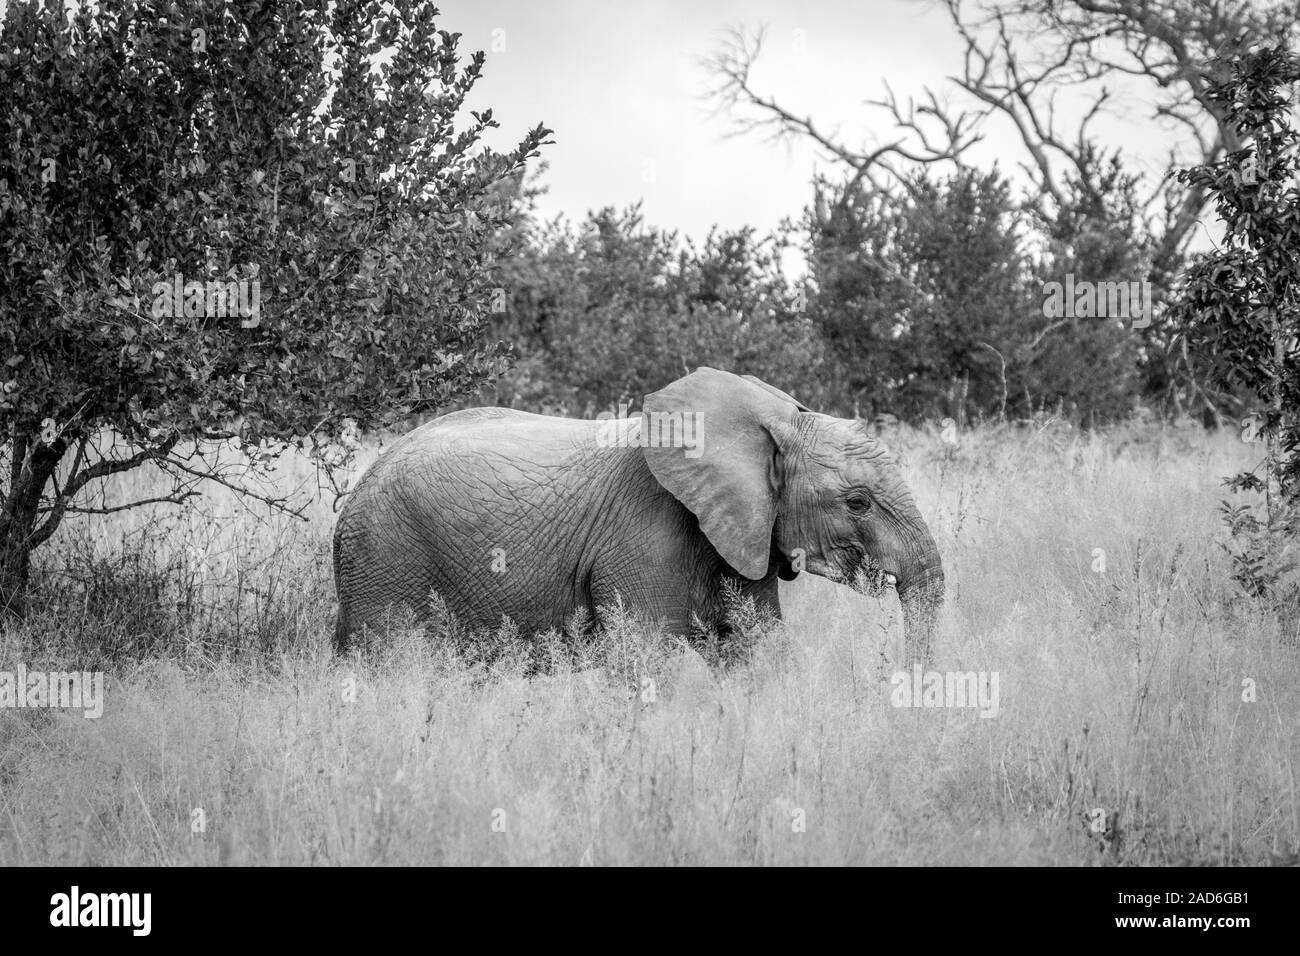 Un éléphant marche dans l'herbe. Banque D'Images